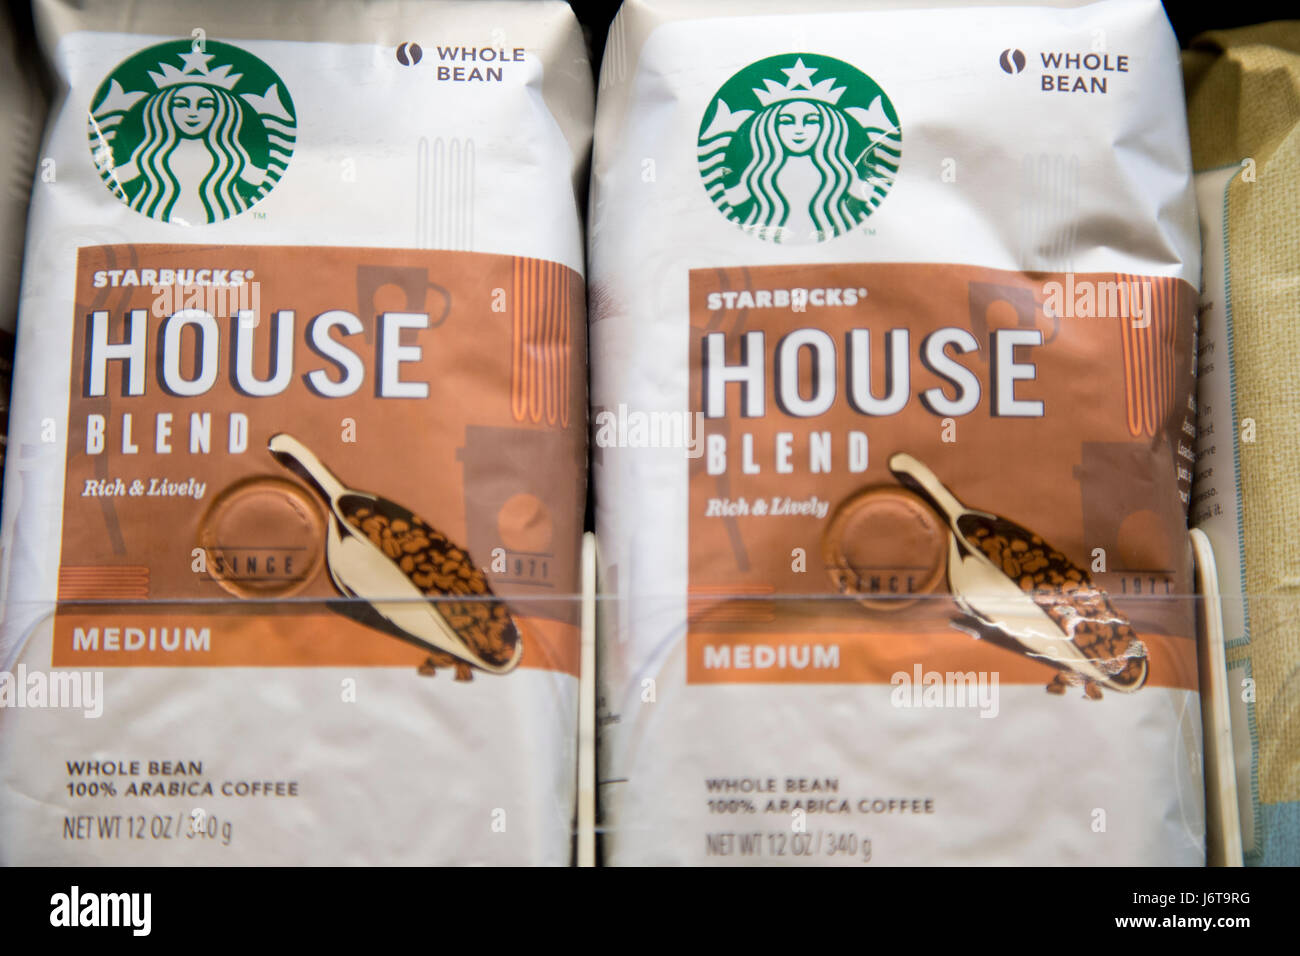 Sacchetti di marchio Starbucks House Blend caffè macinato per espresso sullo scaffale di un negozio di alimentari Foto Stock